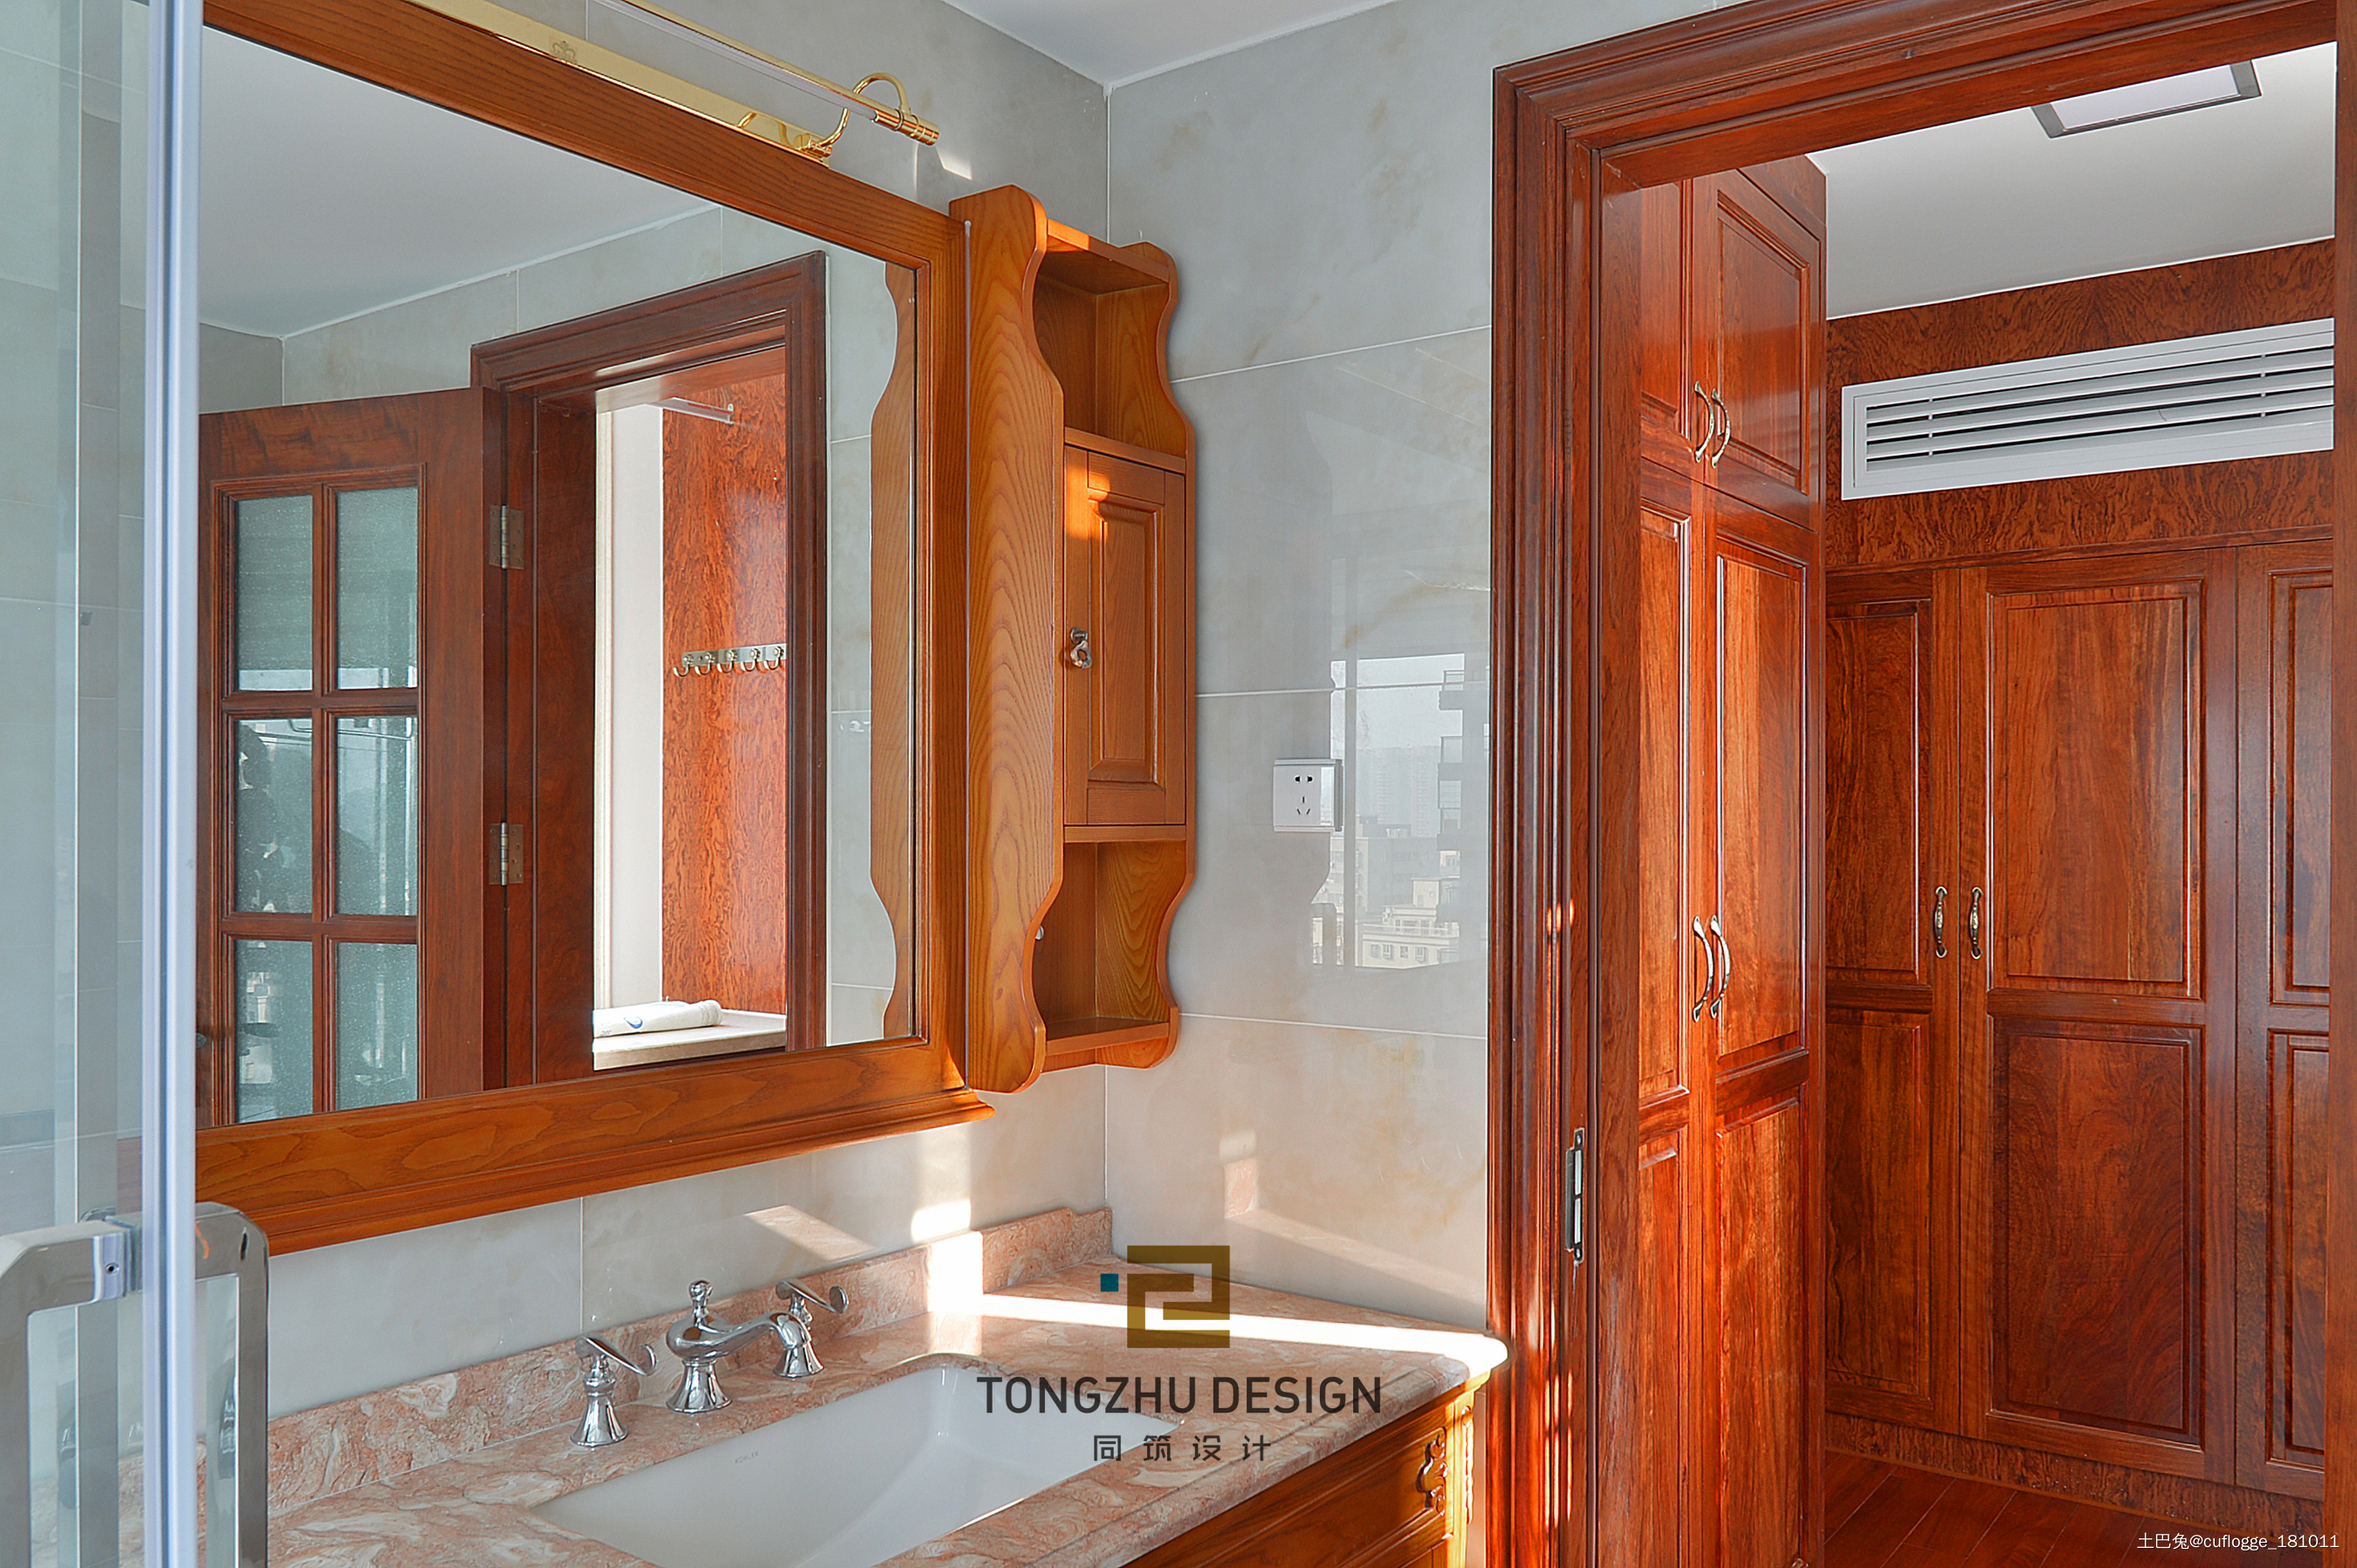 中式浴室镜子设计图片赏析